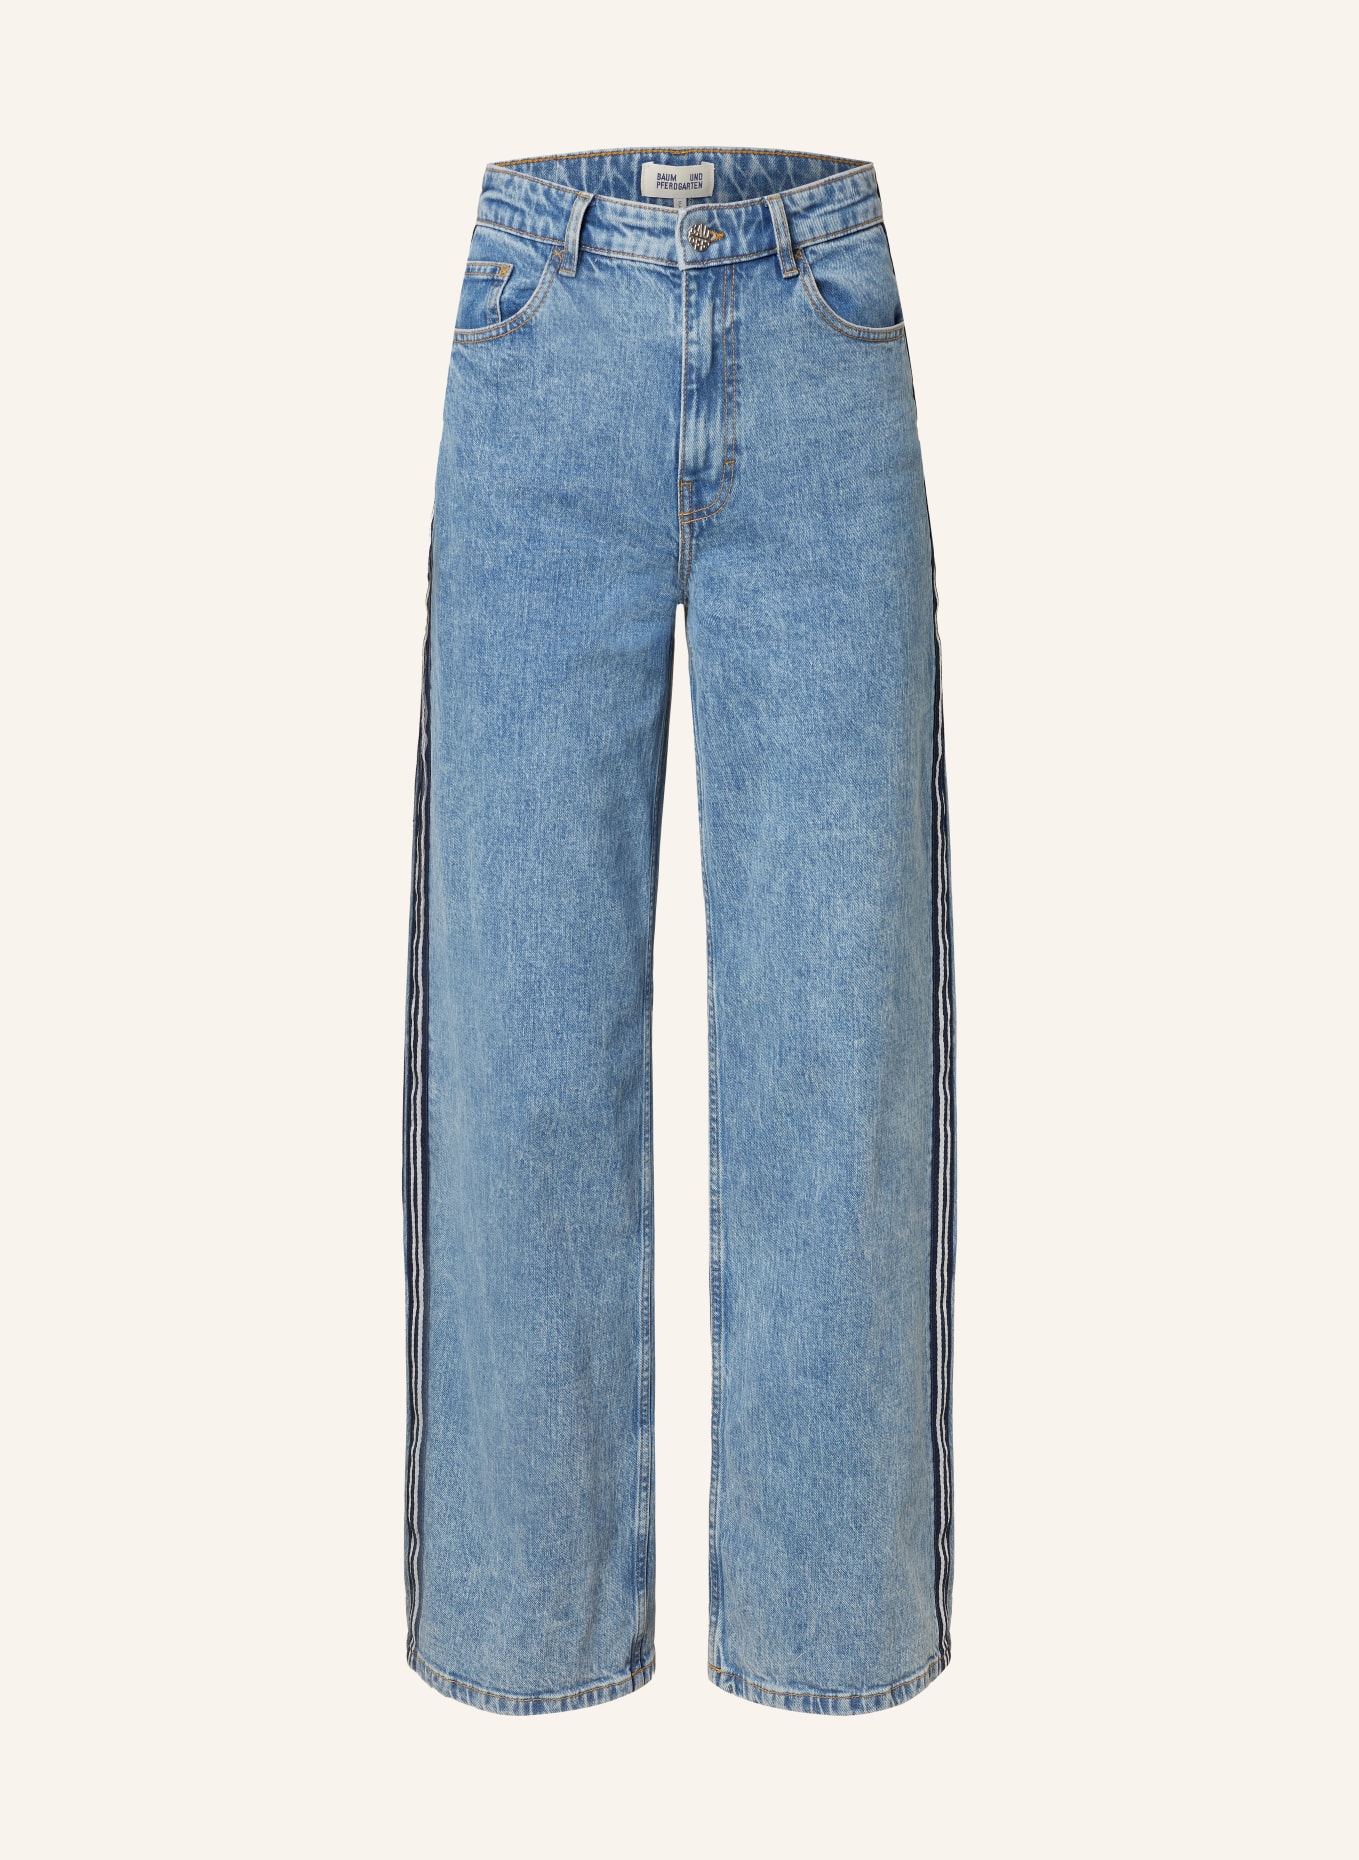 BAUM UND PFERDGARTEN Jeans NINI, Farbe: C7633 MEDIO BLUE DENIM (Bild 1)